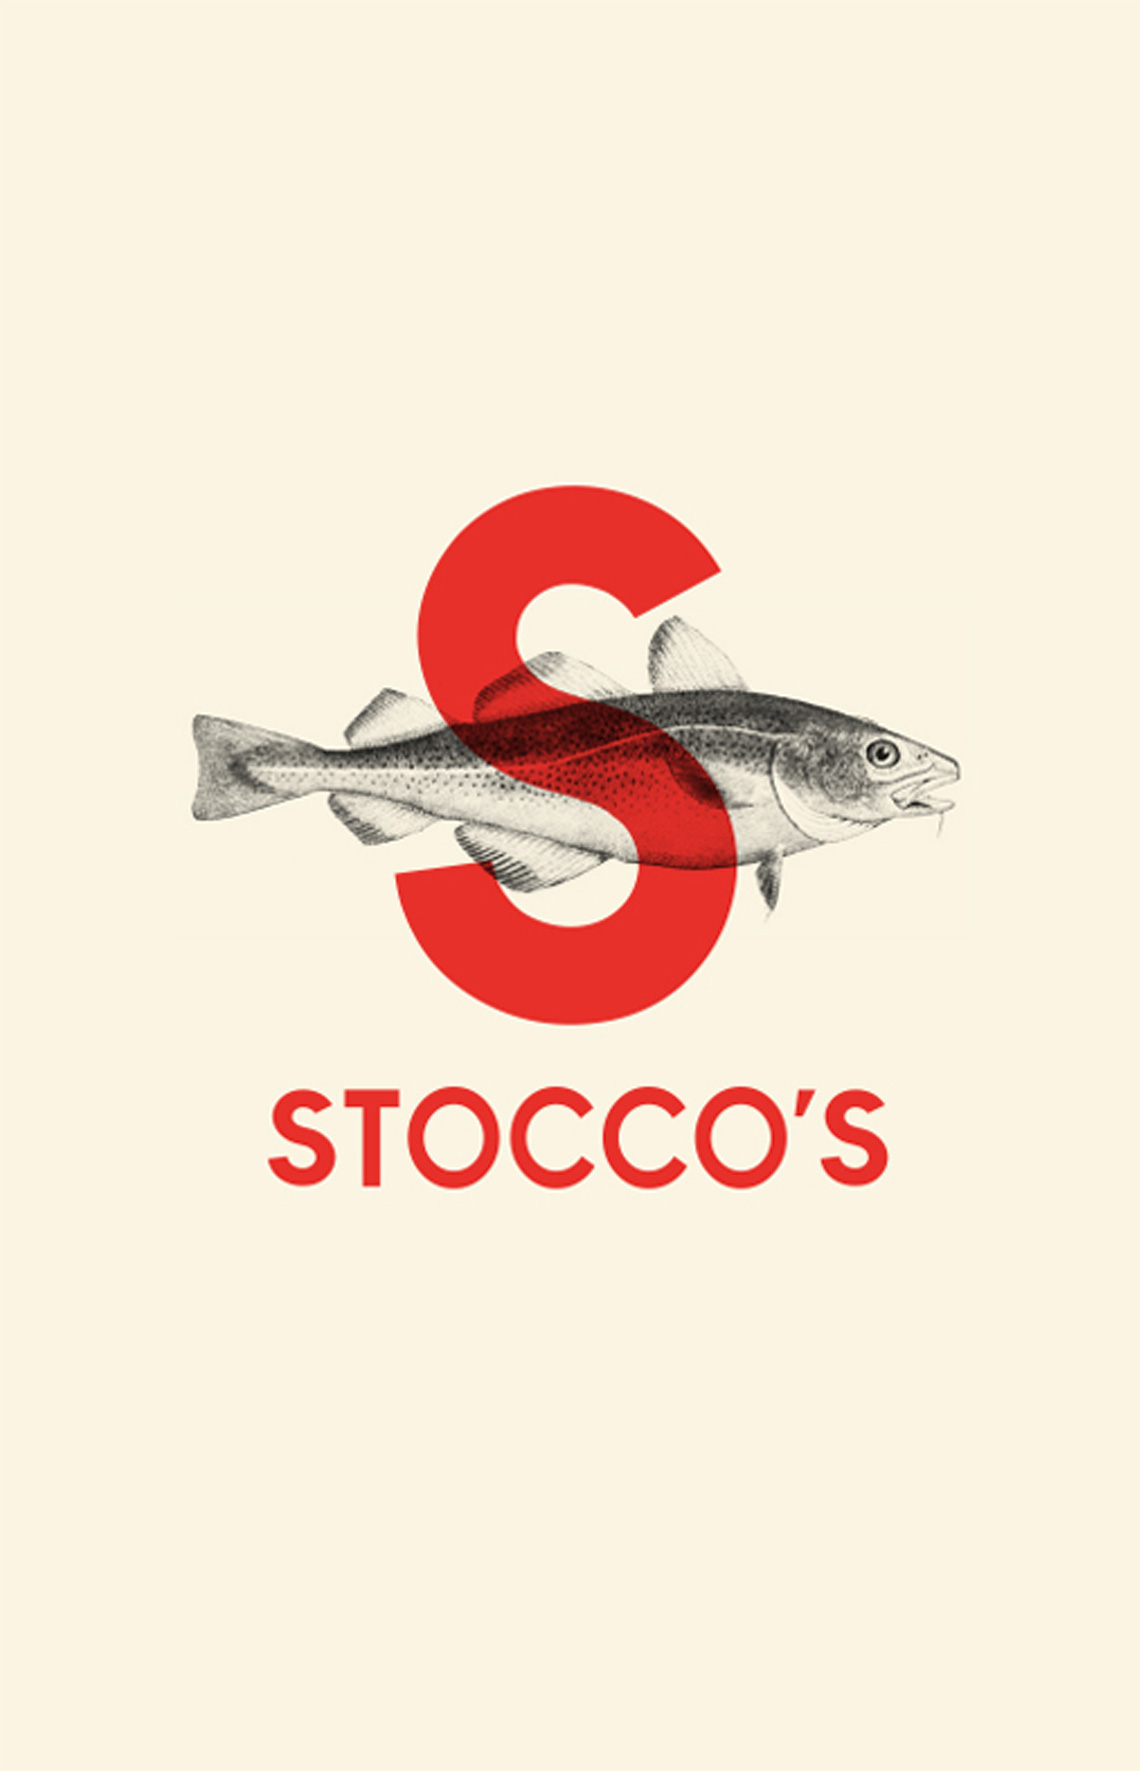 Creazione logo Stocco’s